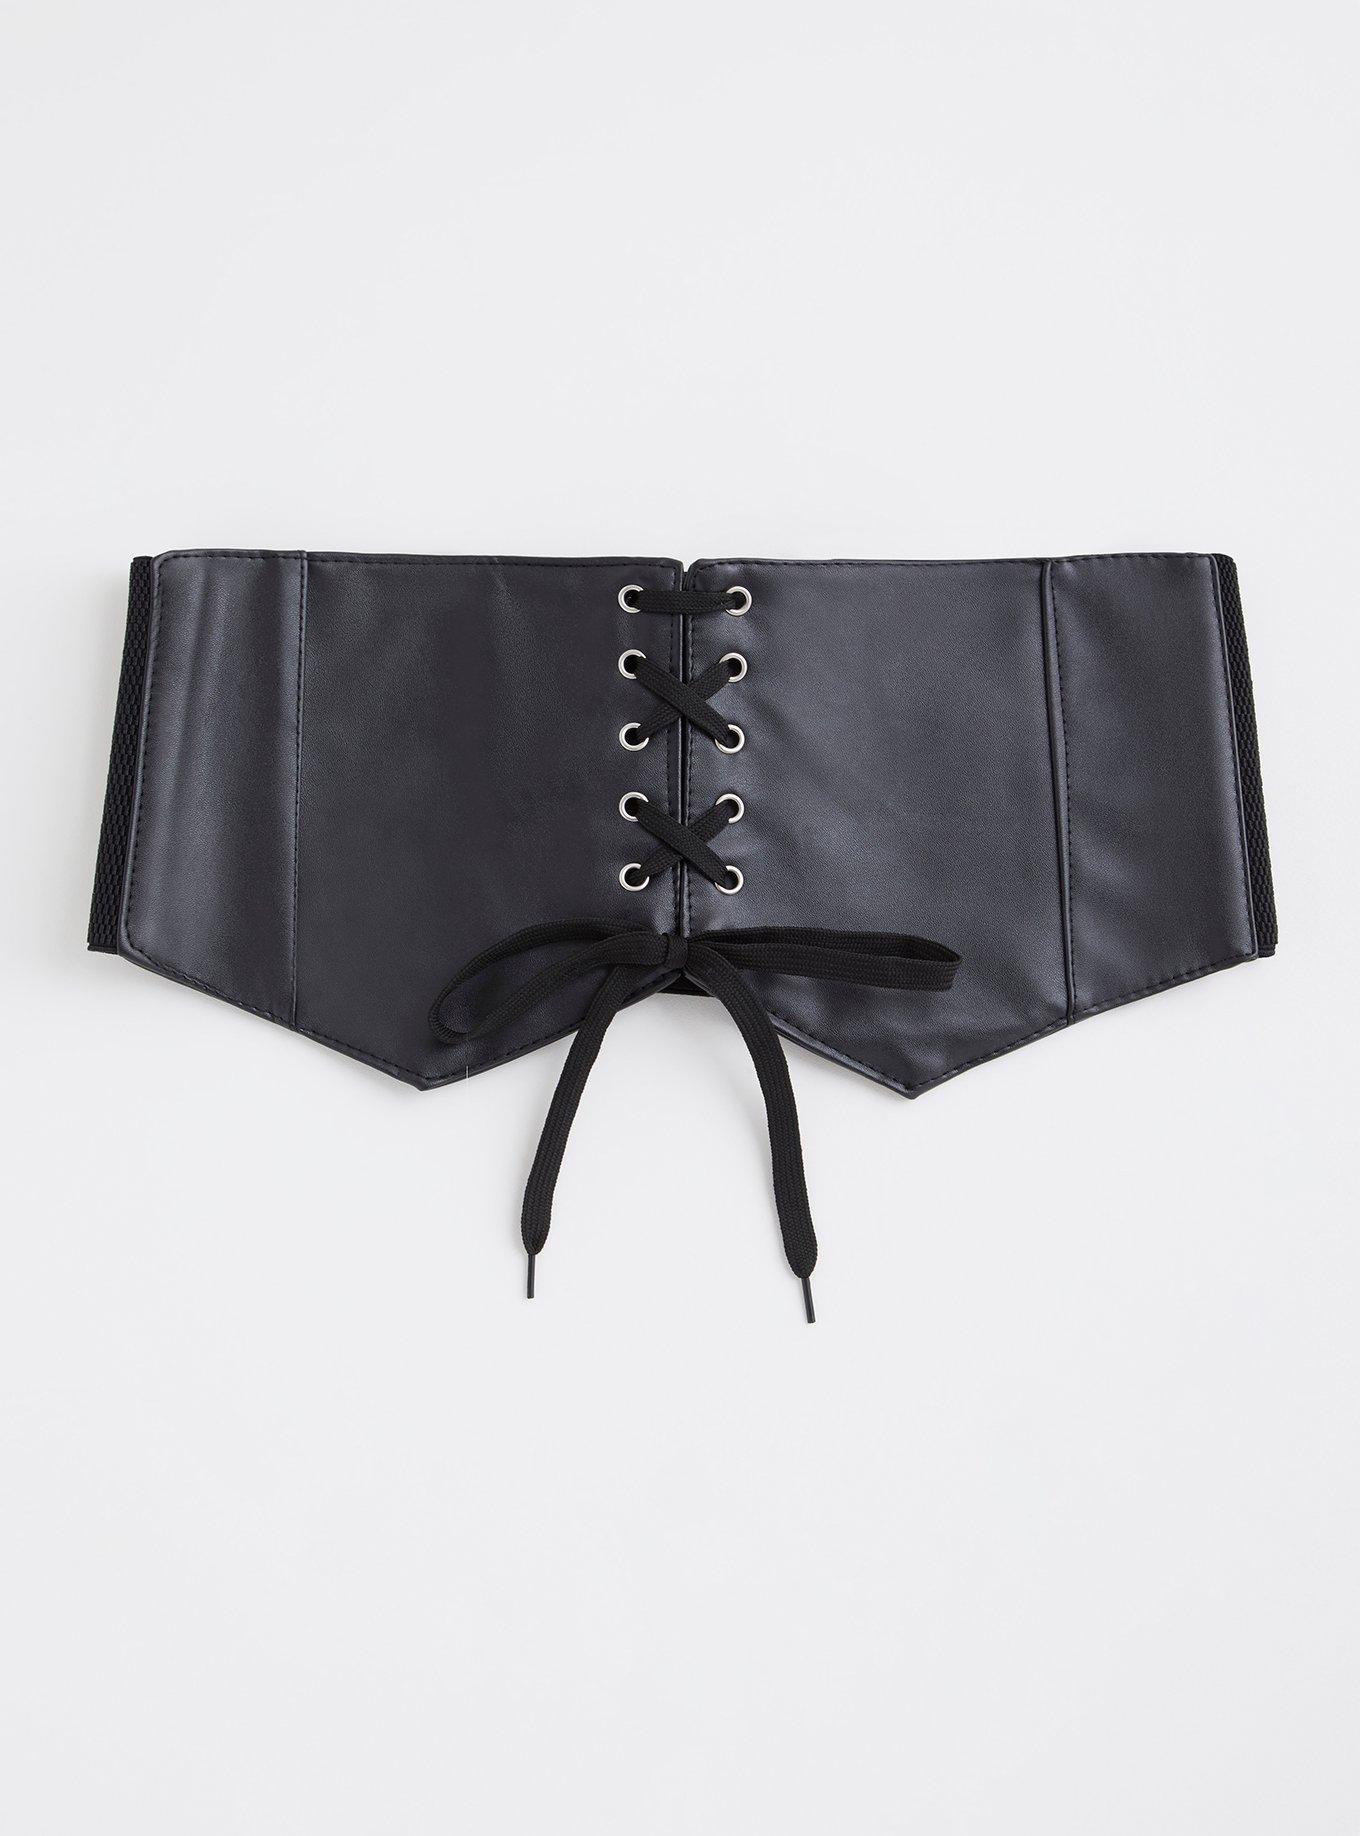 Plus Size - Black Lace-Up Faux Leather Corset Bustier - Torrid